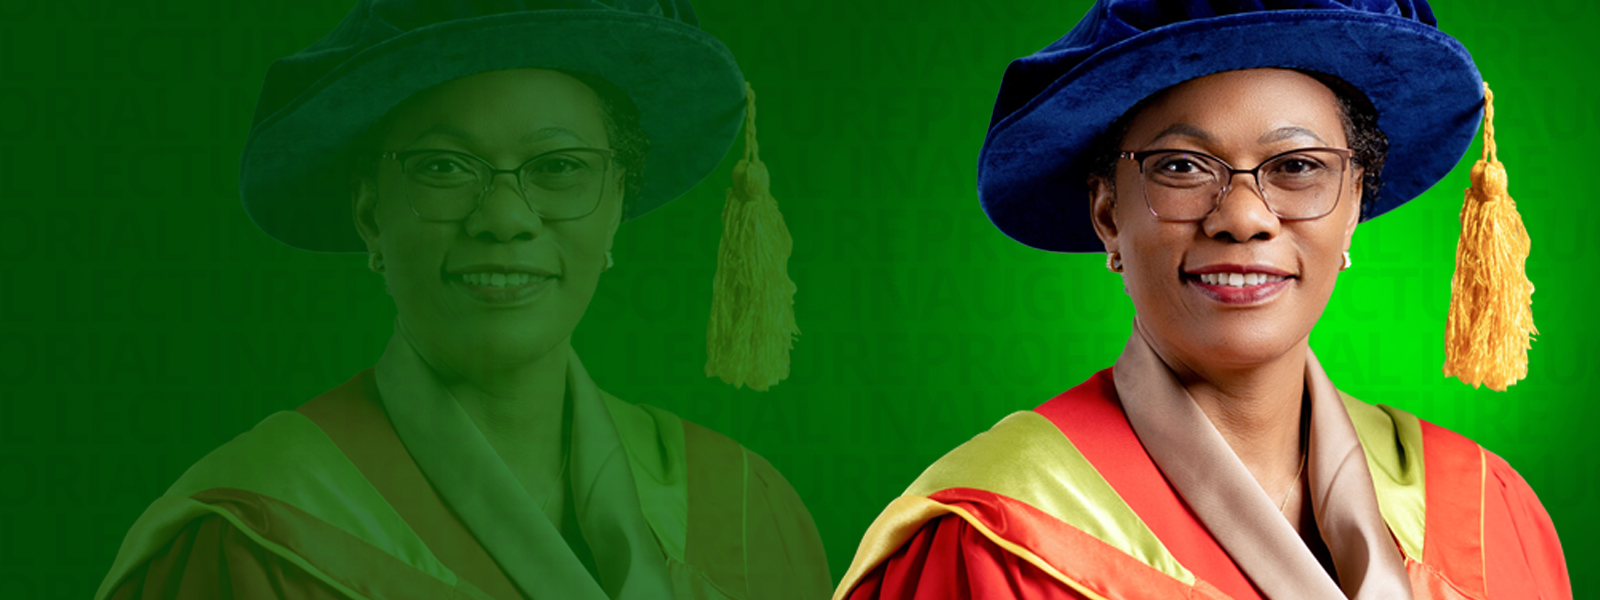 Professor Atinuke Olusola Adebanji